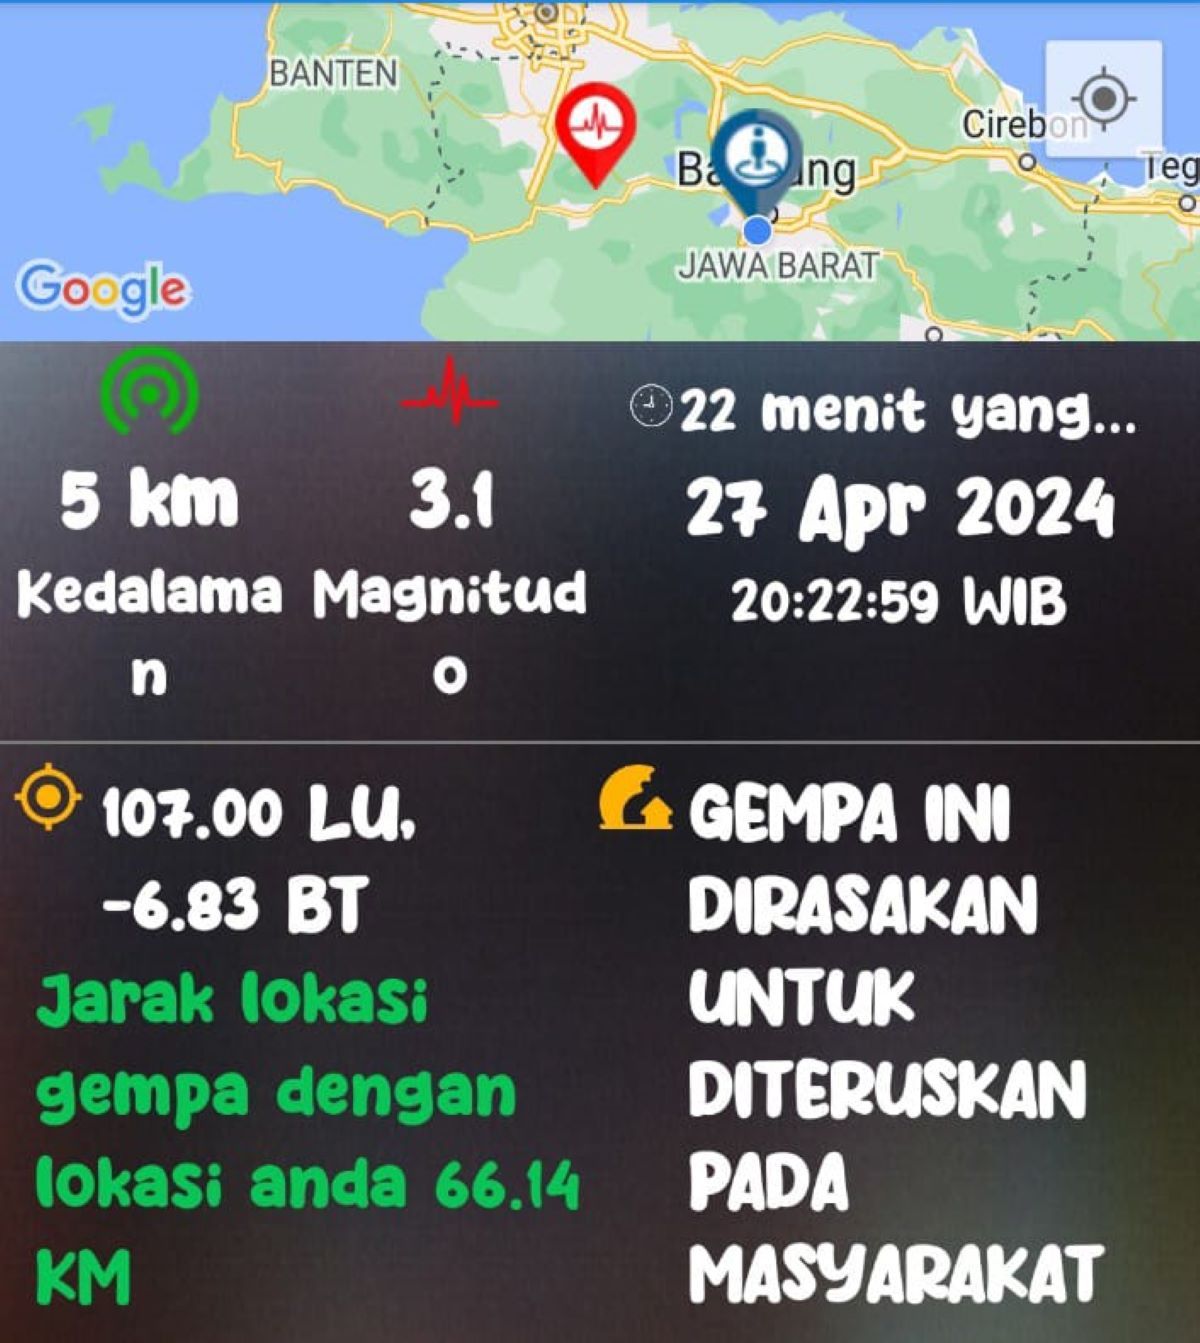 Gempa barusan, BMKG sebut pusat gempa berada di Sukabumi Jawa Barat, terasa kencang hingga Cianjur hari ini